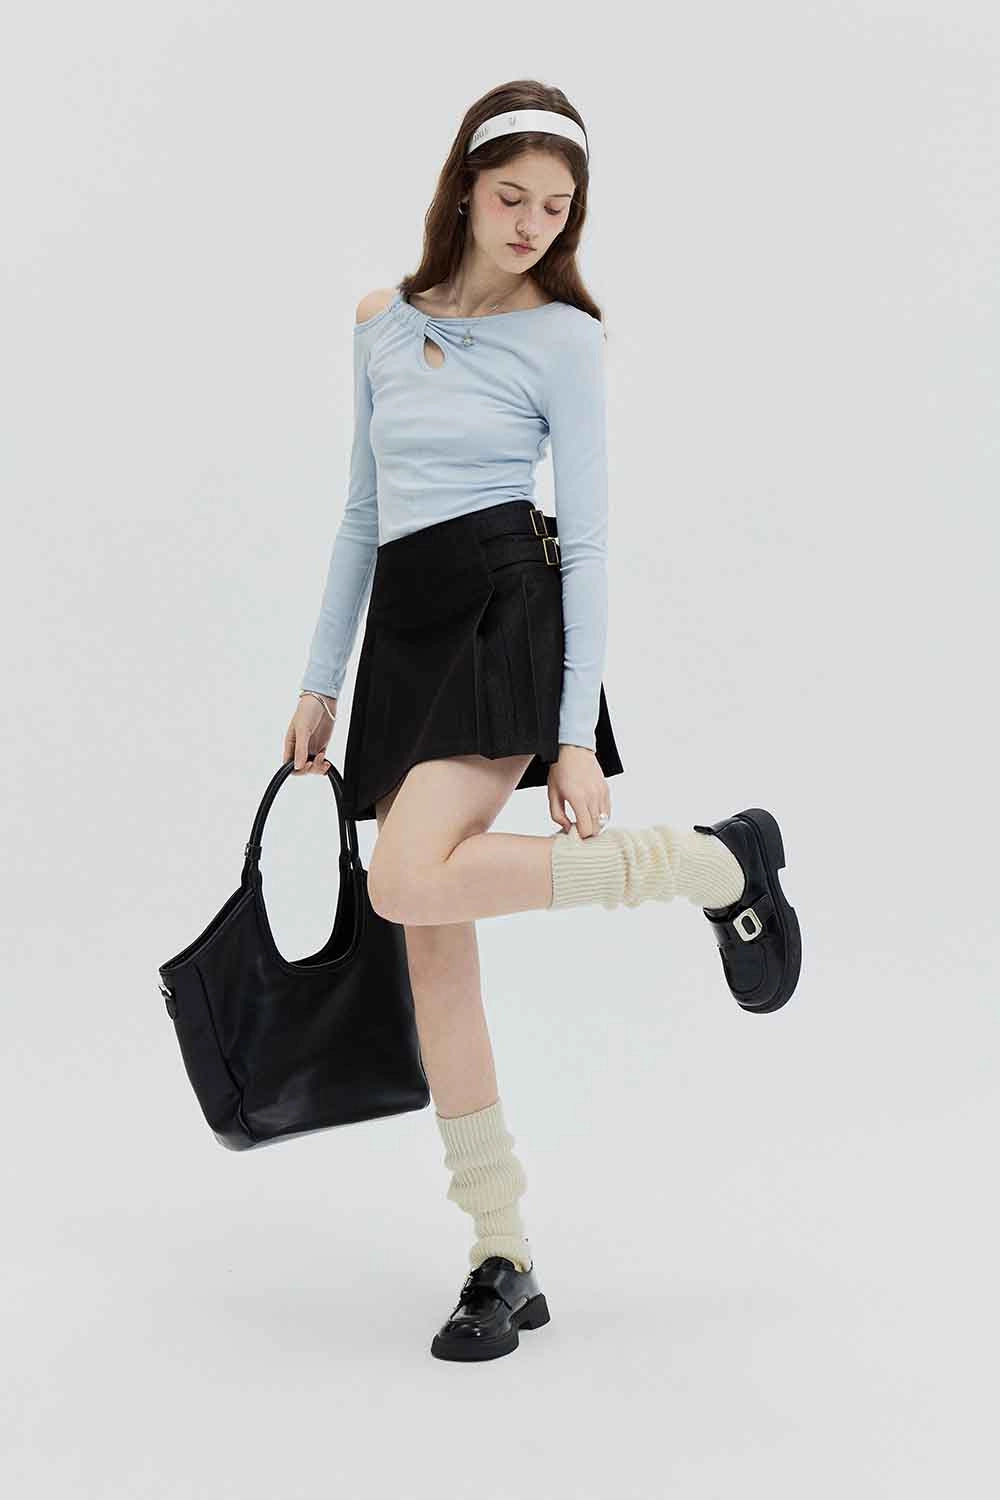 Skirt Mini A-Line Pinggang Tinggi Wanita dengan Perincian Tali Pinggang